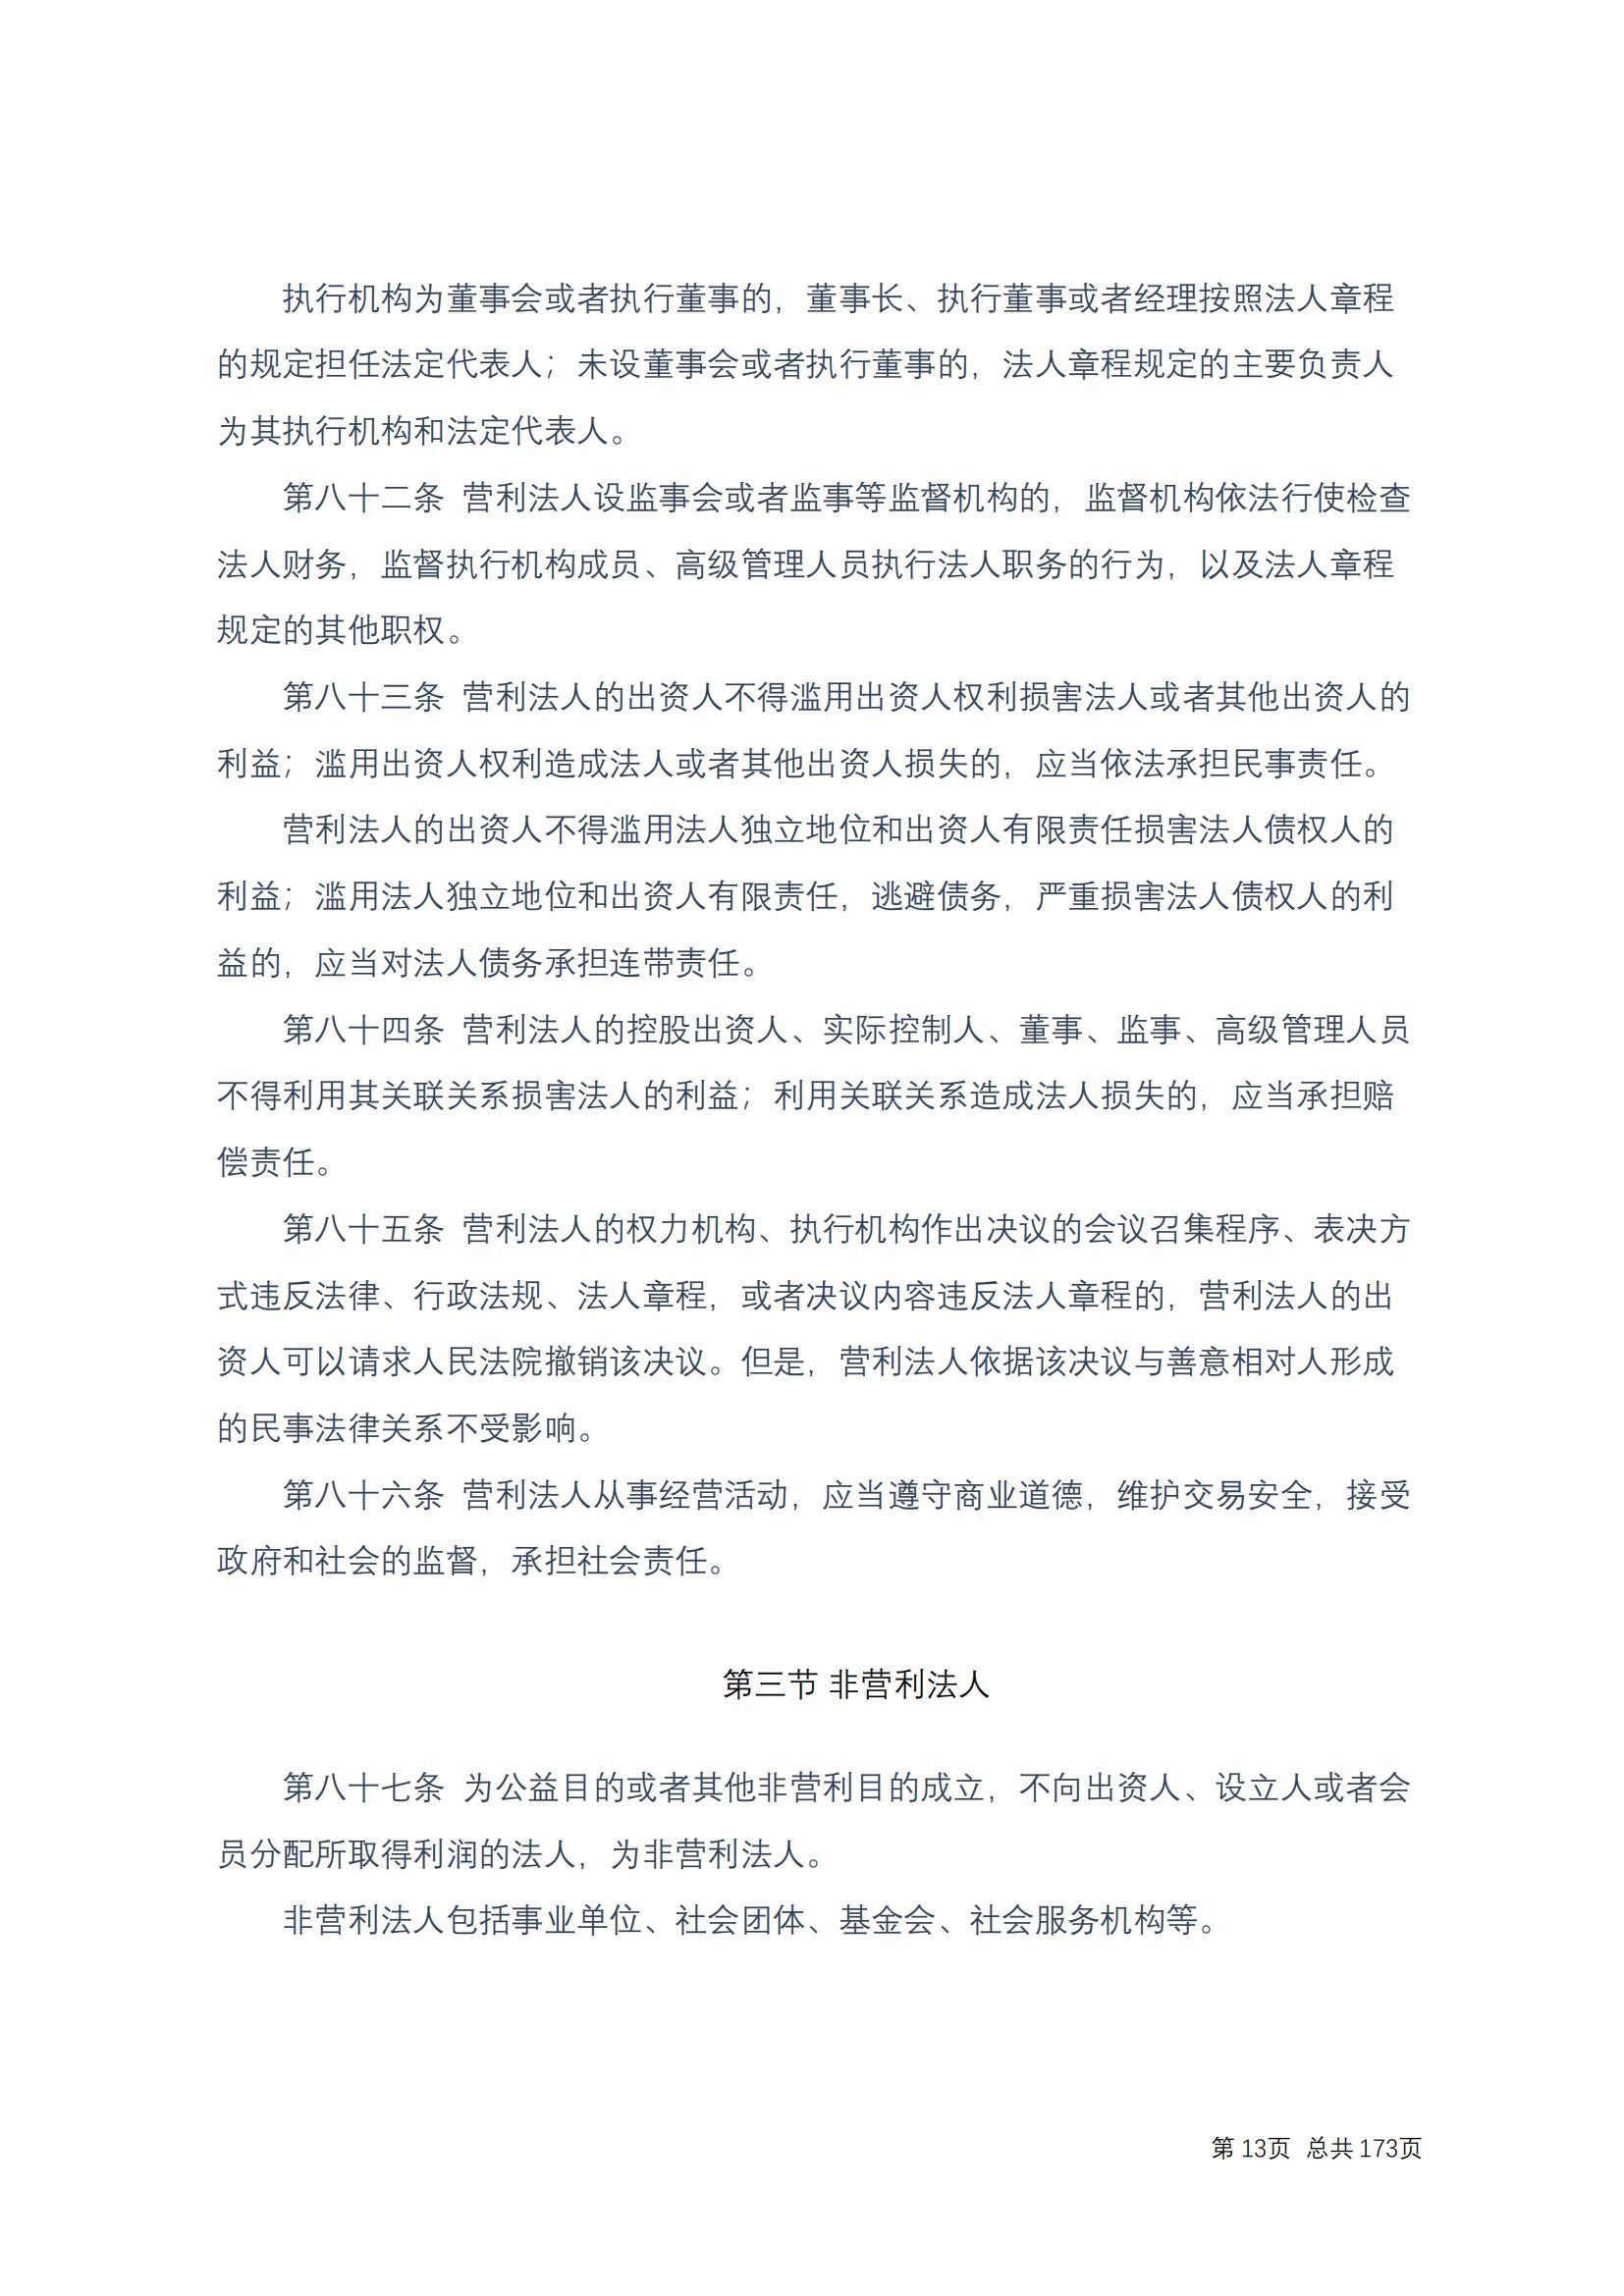 中华人民共和国民法典 修改过_12